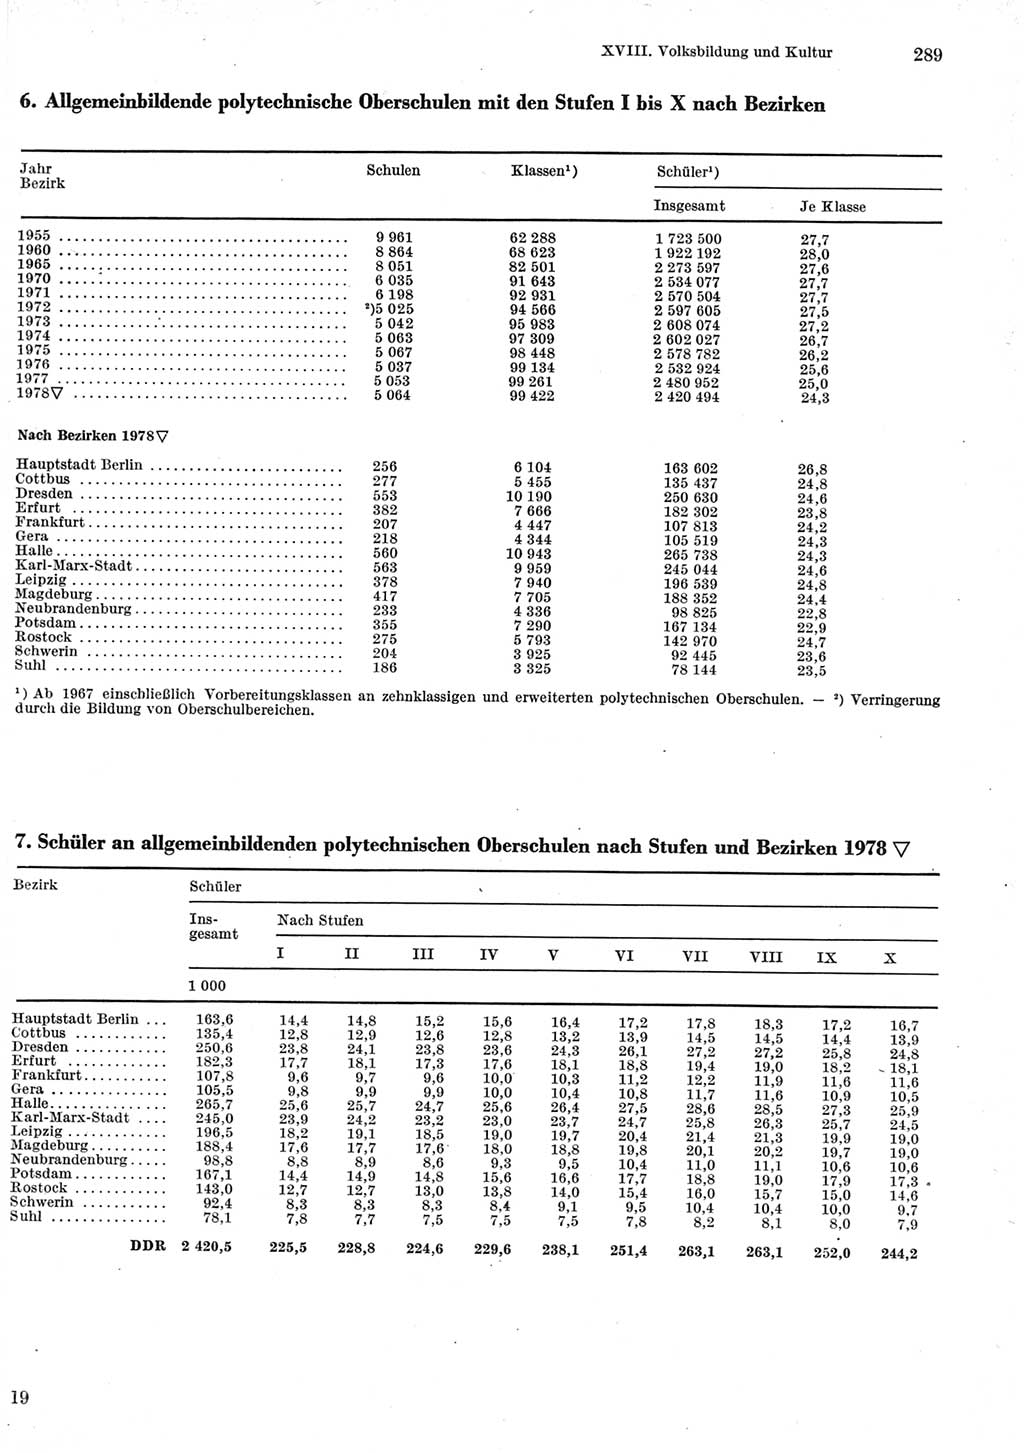 Statistisches Jahrbuch der Deutschen Demokratischen Republik (DDR) 1979, Seite 289 (Stat. Jb. DDR 1979, S. 289)